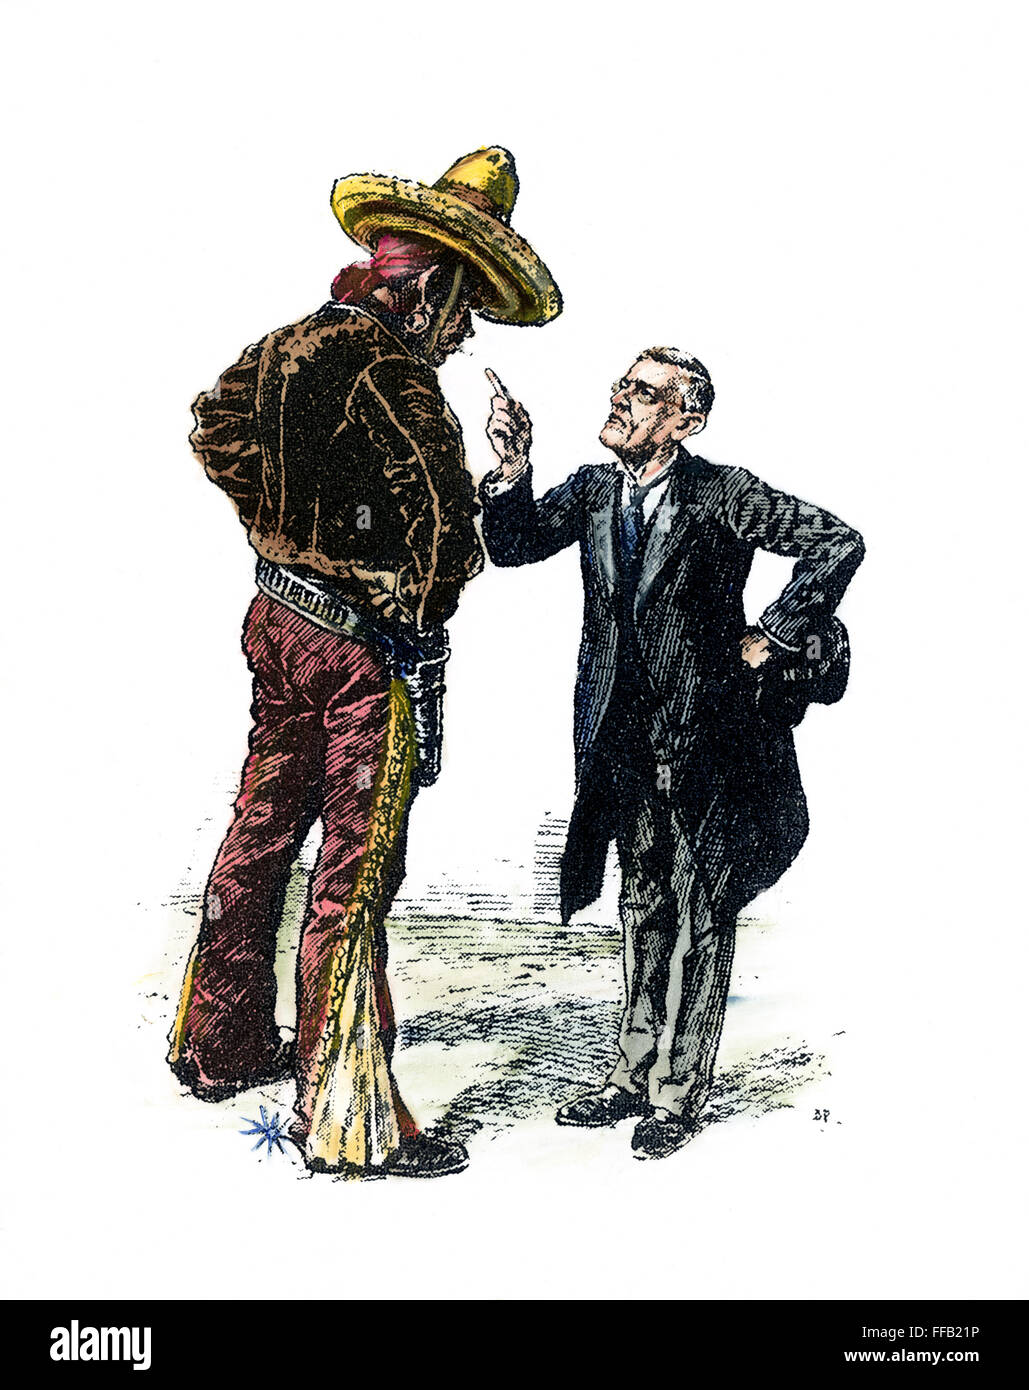 WILSON & MEXIKO, 1913. /Nu.S. Präsident Woodrow Wilson schimpft Mexiko über seine politischen Unruhen. Englische Cartoon, 1913. Stockfoto